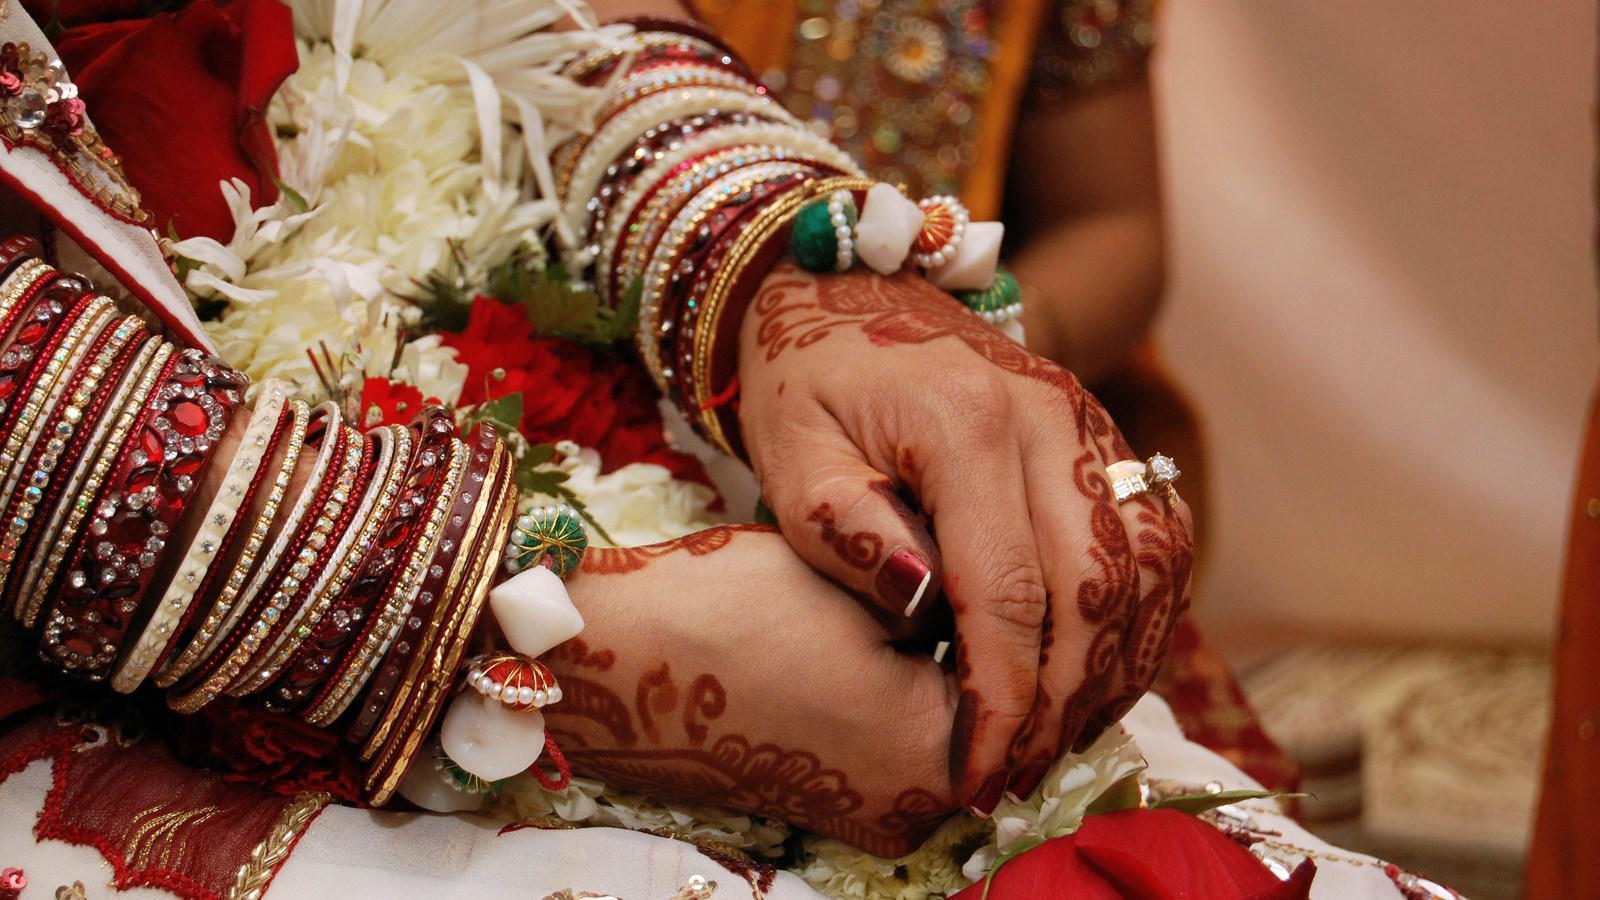 Indian Wedding graphy HD desktop wallpaper, Widescreen, High